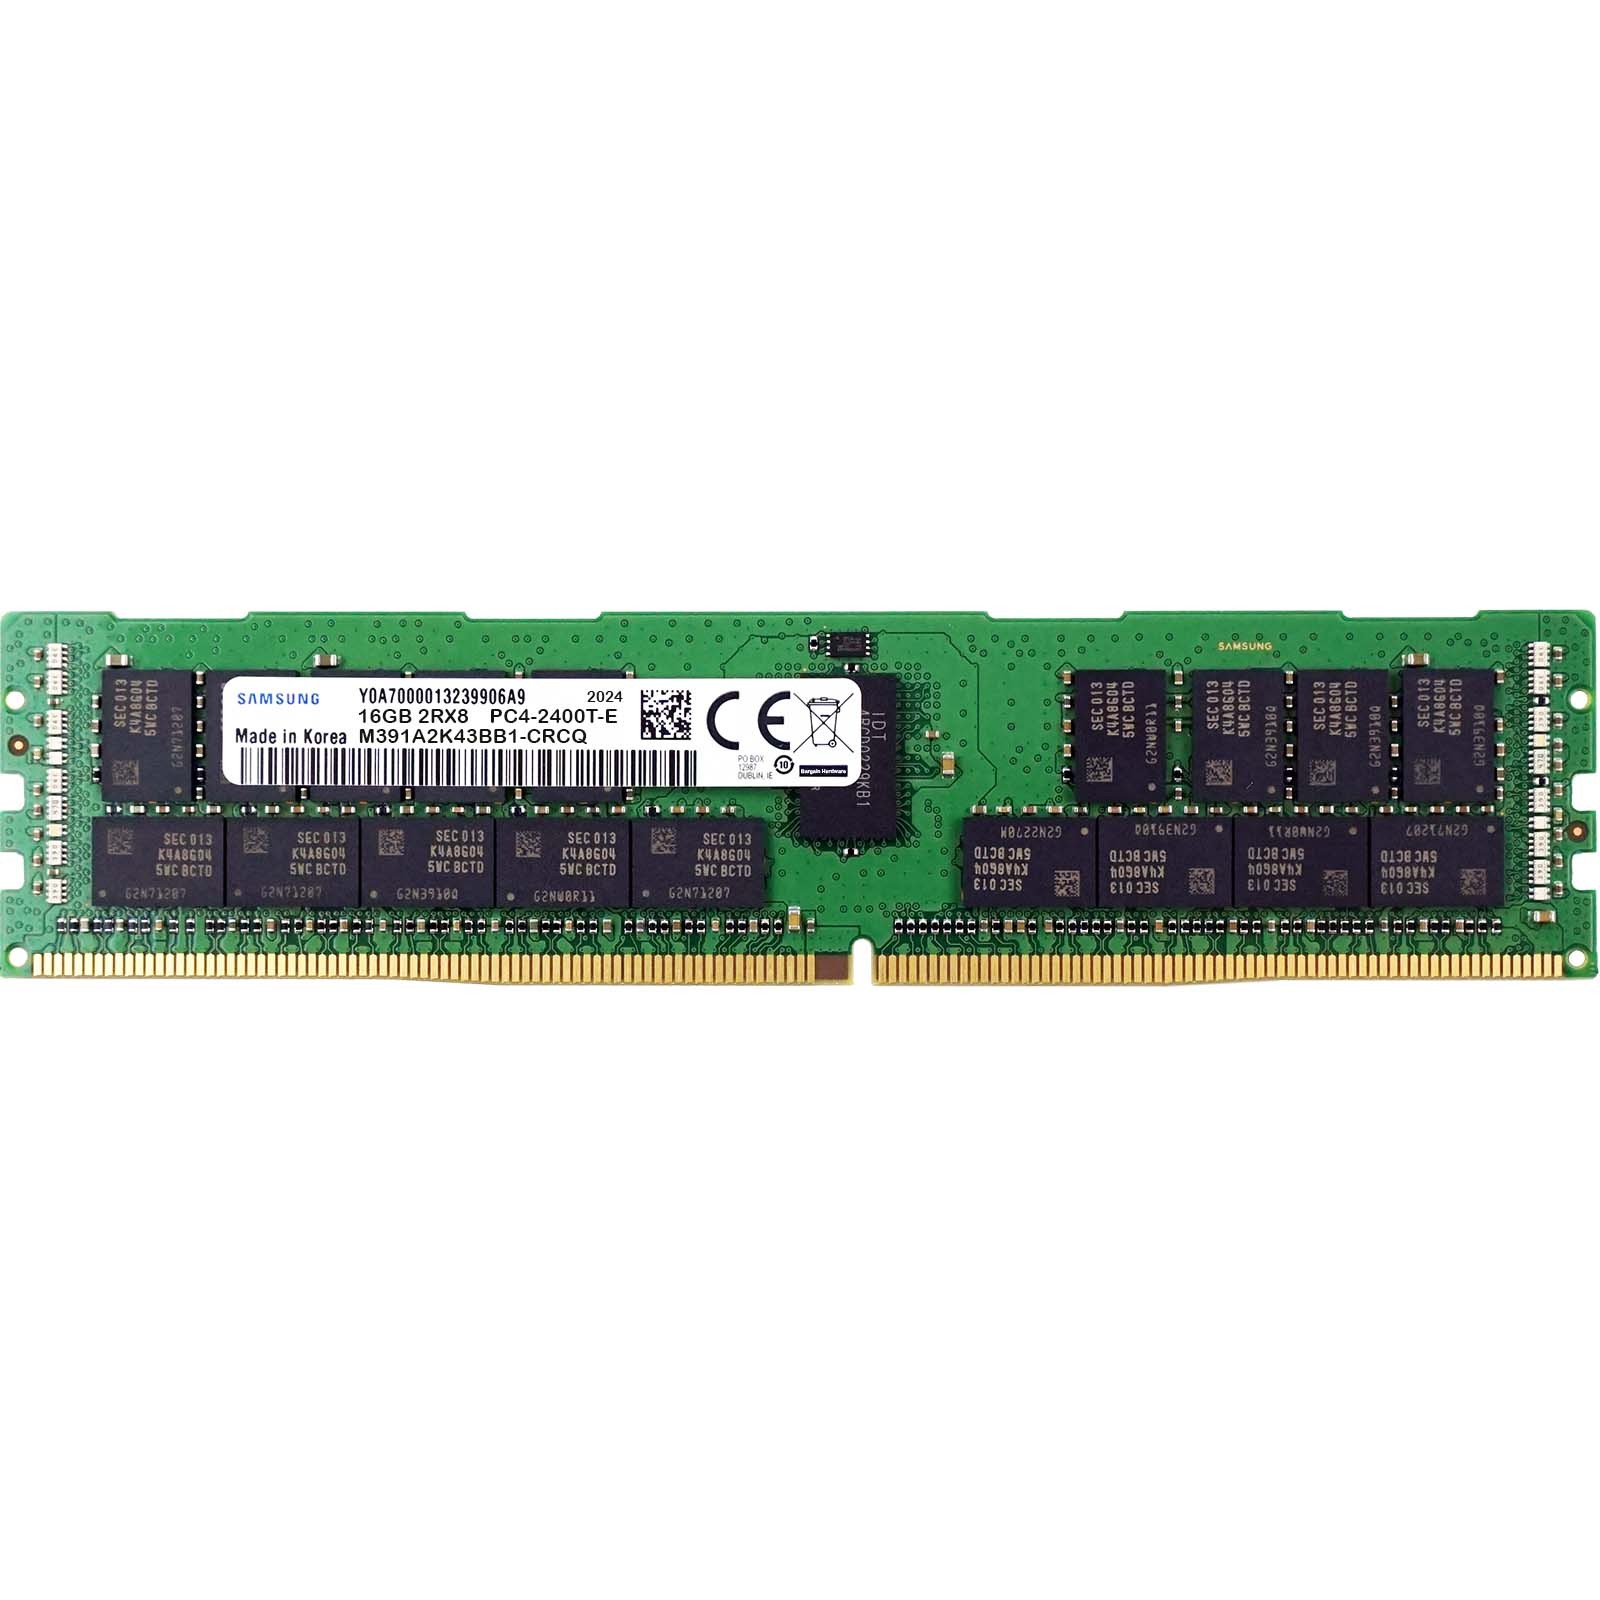 Samsung (M391A2K43BB1-CRCQ) - 16GB PC4-19200T-E (2RX8, DDR4-2400MHz) RAM